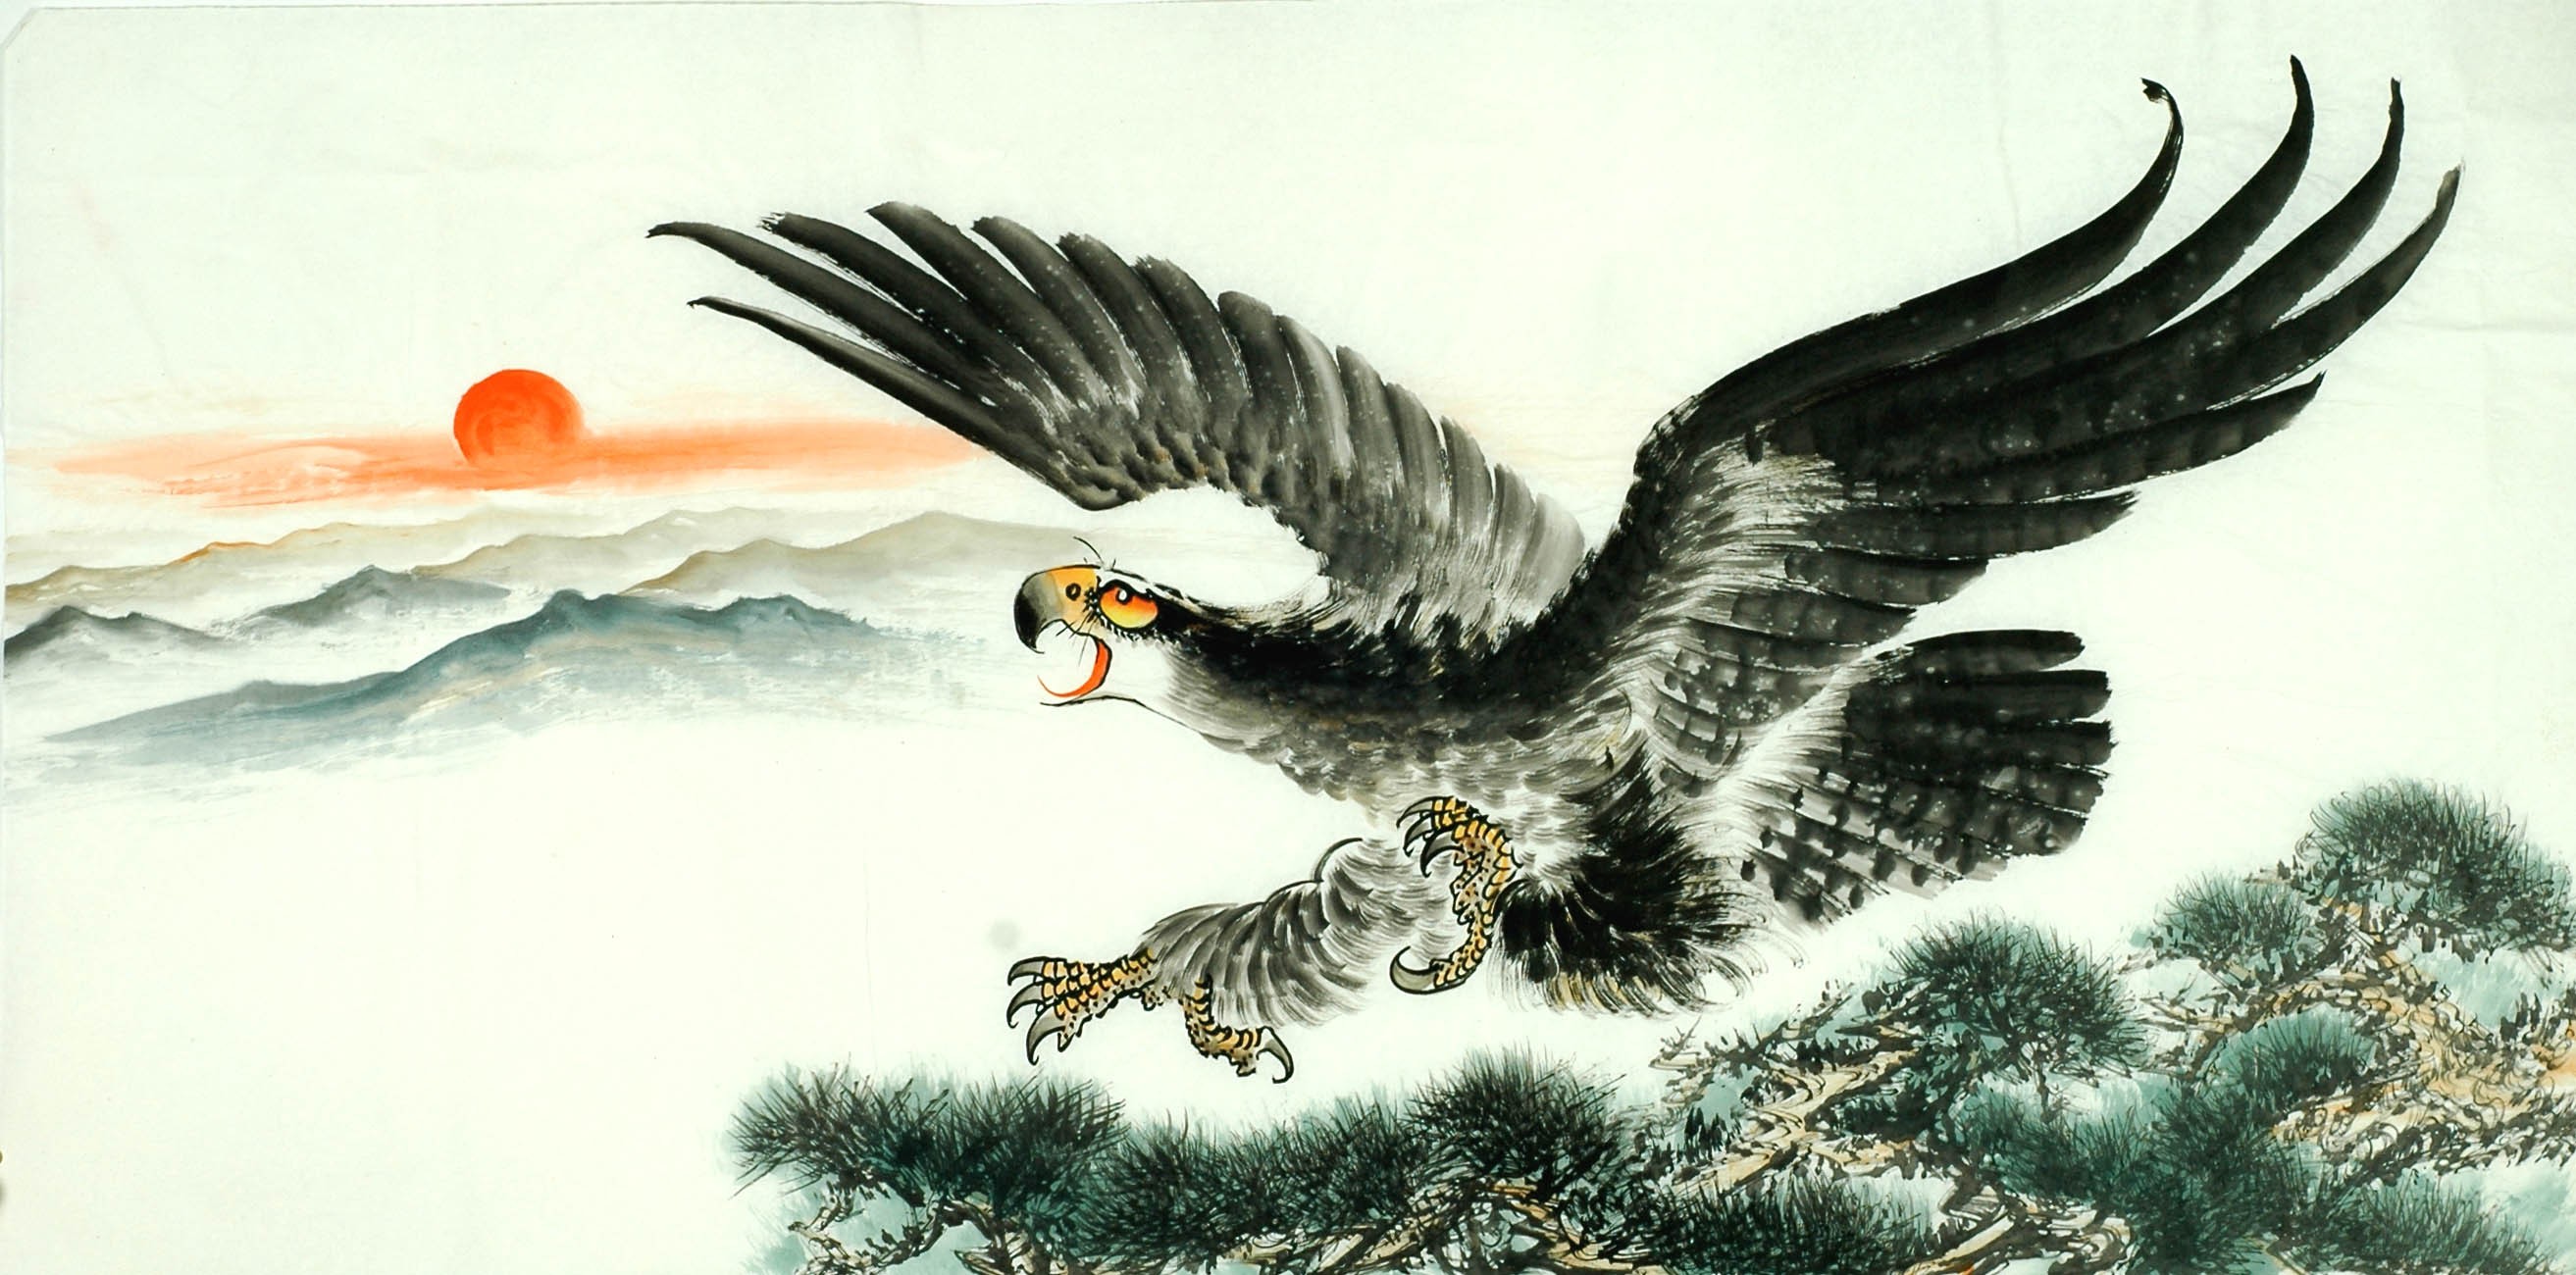 Chinese Eagle Painting - CNAG011307